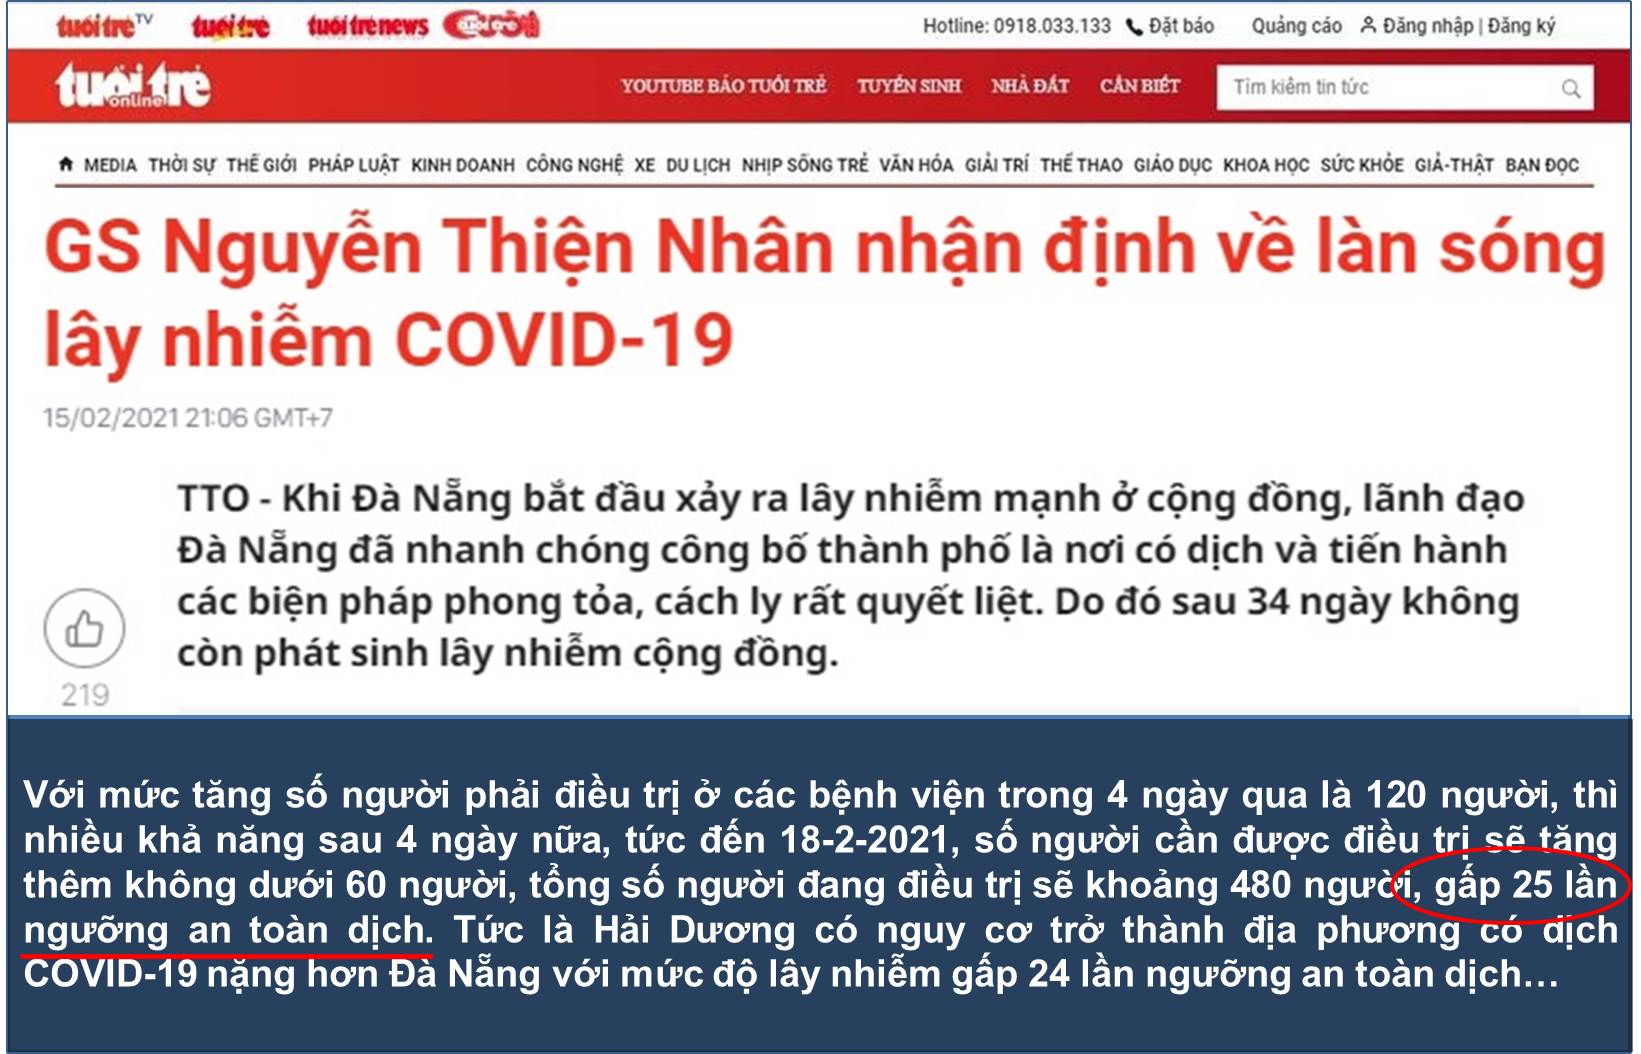 GS Nguyễn Thiện Nhân nhận định về làn sóng lây nhiễm COVID-19